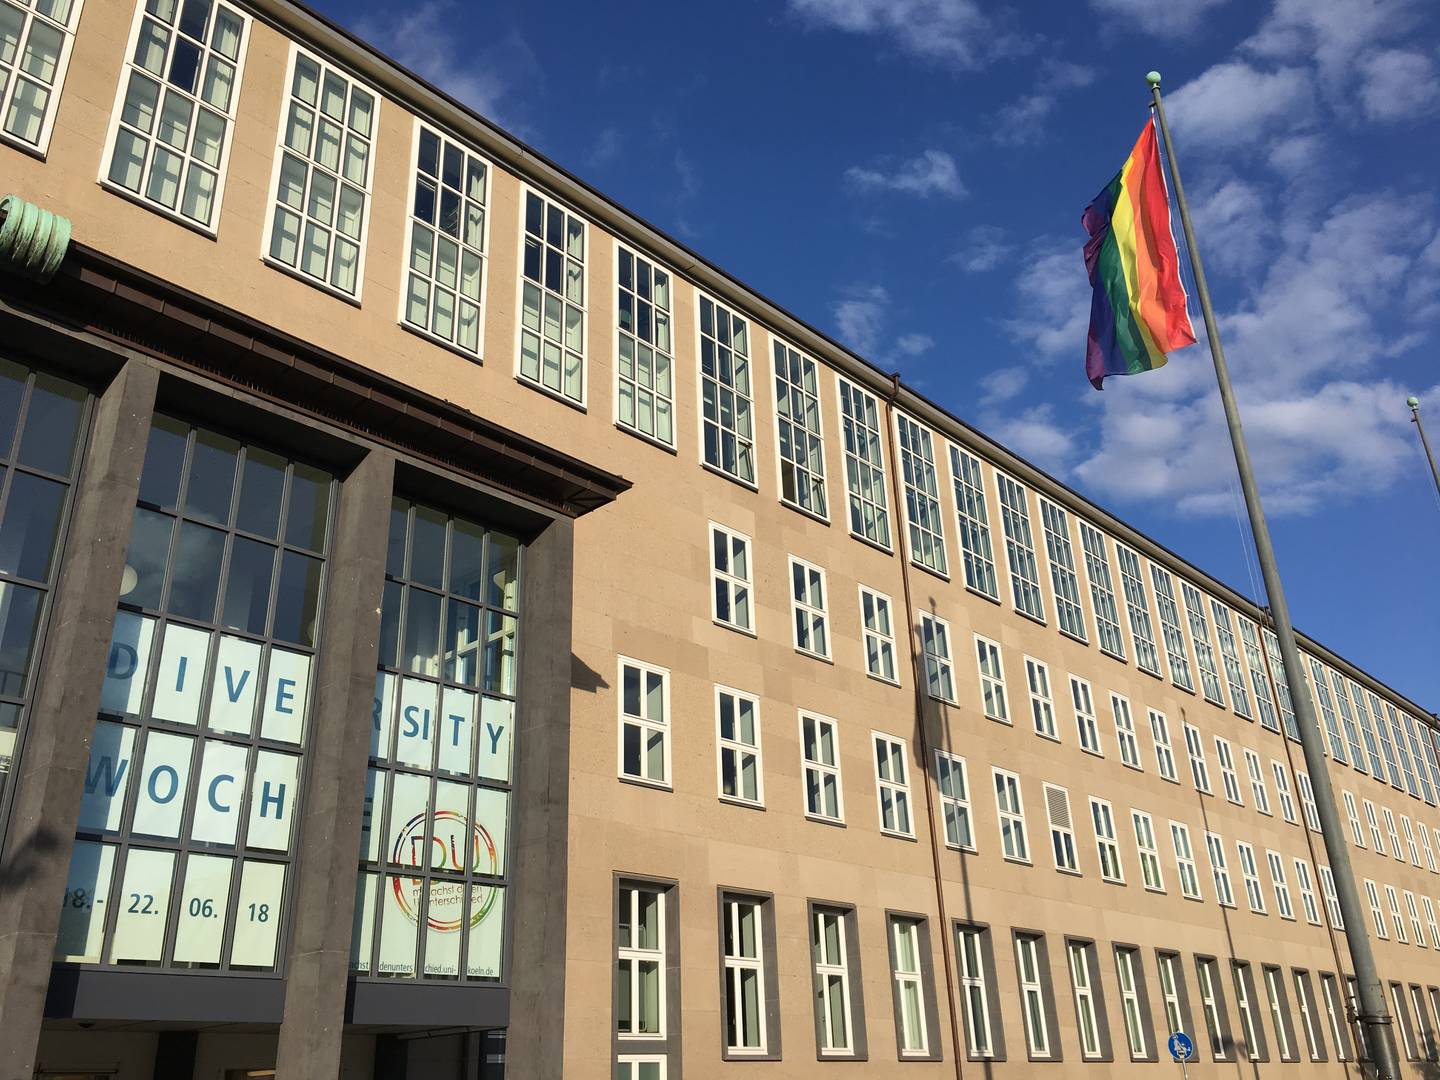 Auf dem Bild ist eine gehisste Regenbogenflagge zu sehen, welche vor blauem Himmel im Wind weht. Im Hintergrund sieht man das Hauptgebäude der Universität zu Köln.